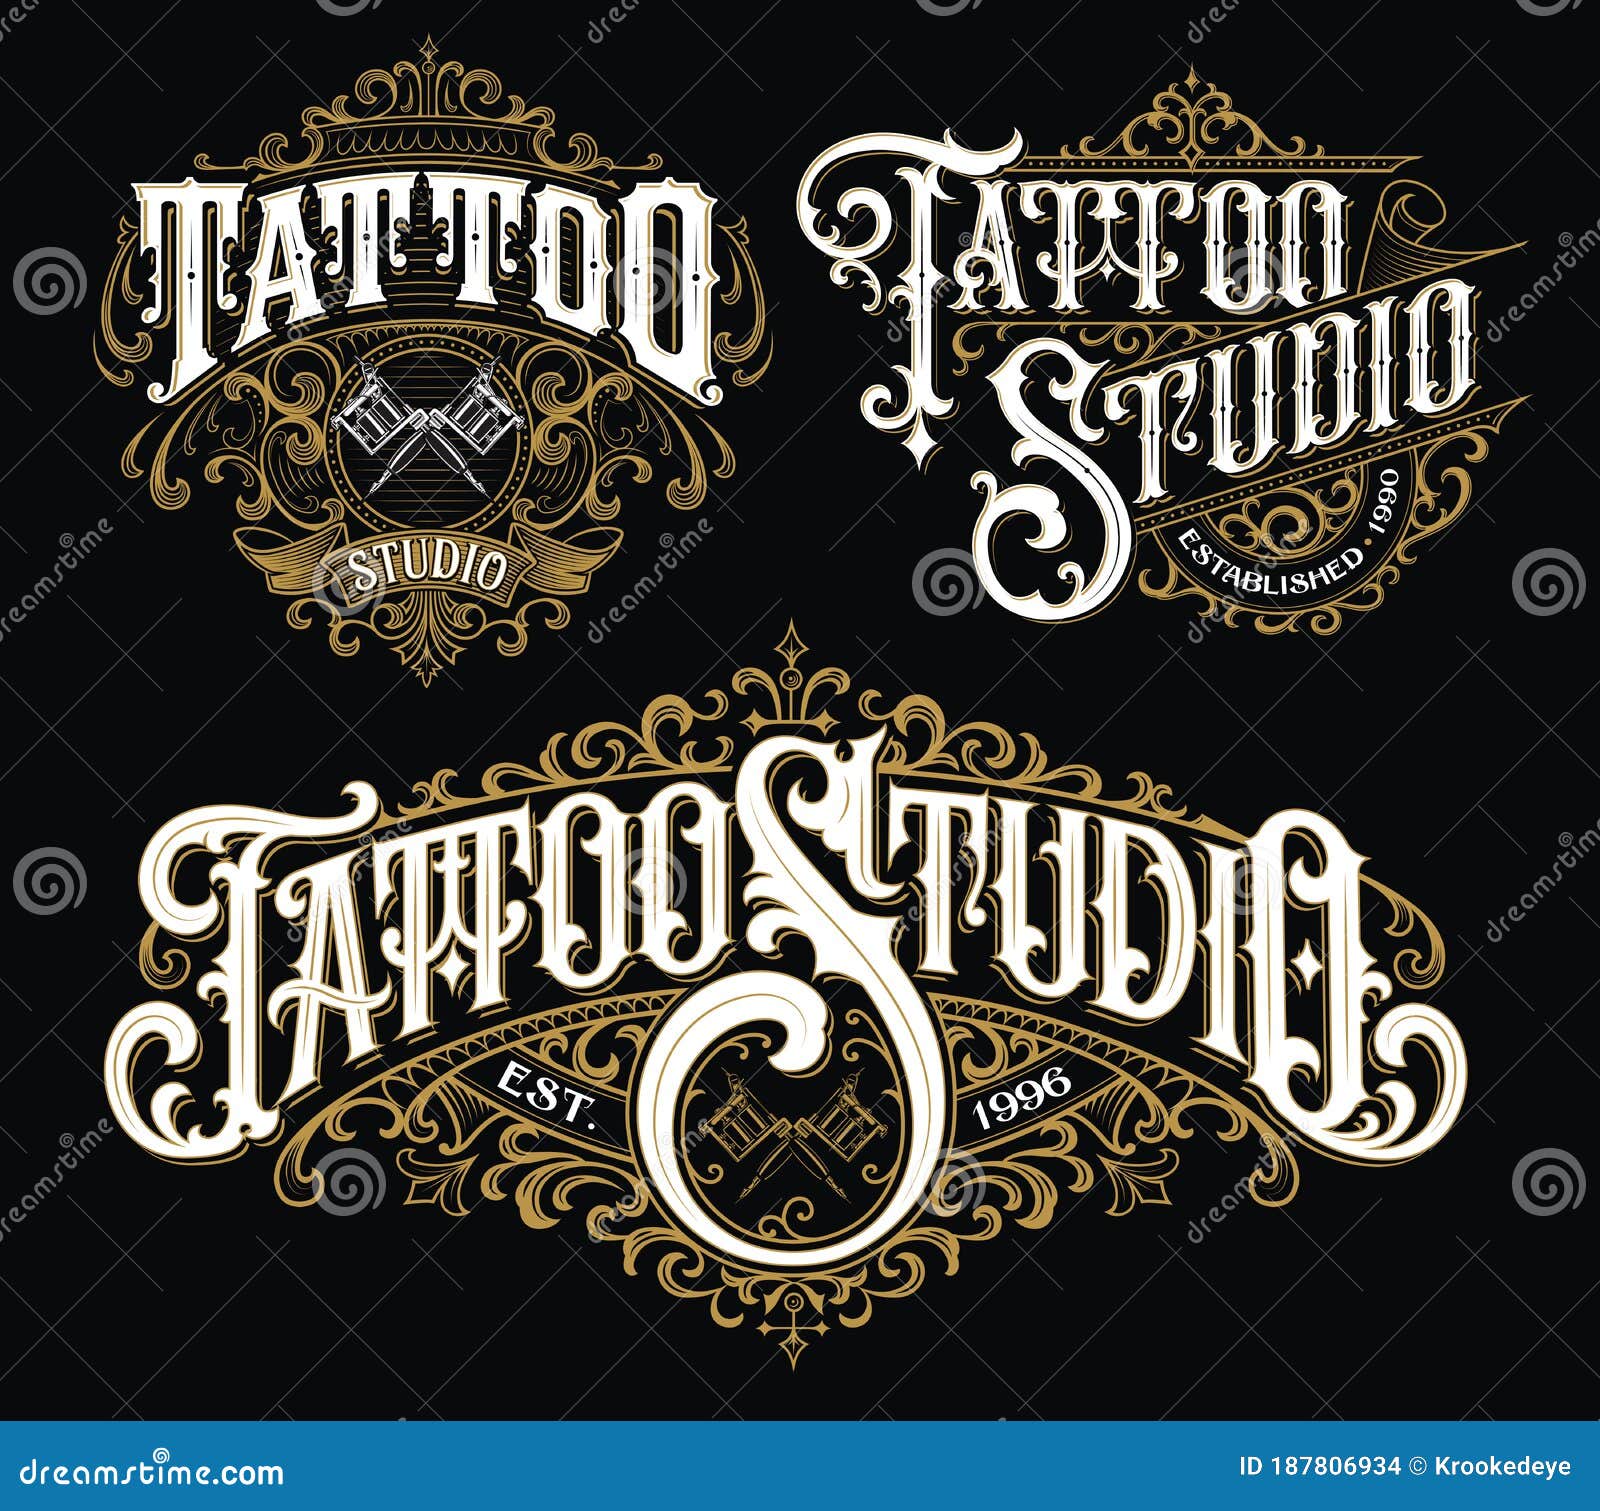 Tattoo Lettering Stock Illustrations – 12,184 Tattoo Lettering Stock  Illustrations, Vectors & Clipart - Dreamstime